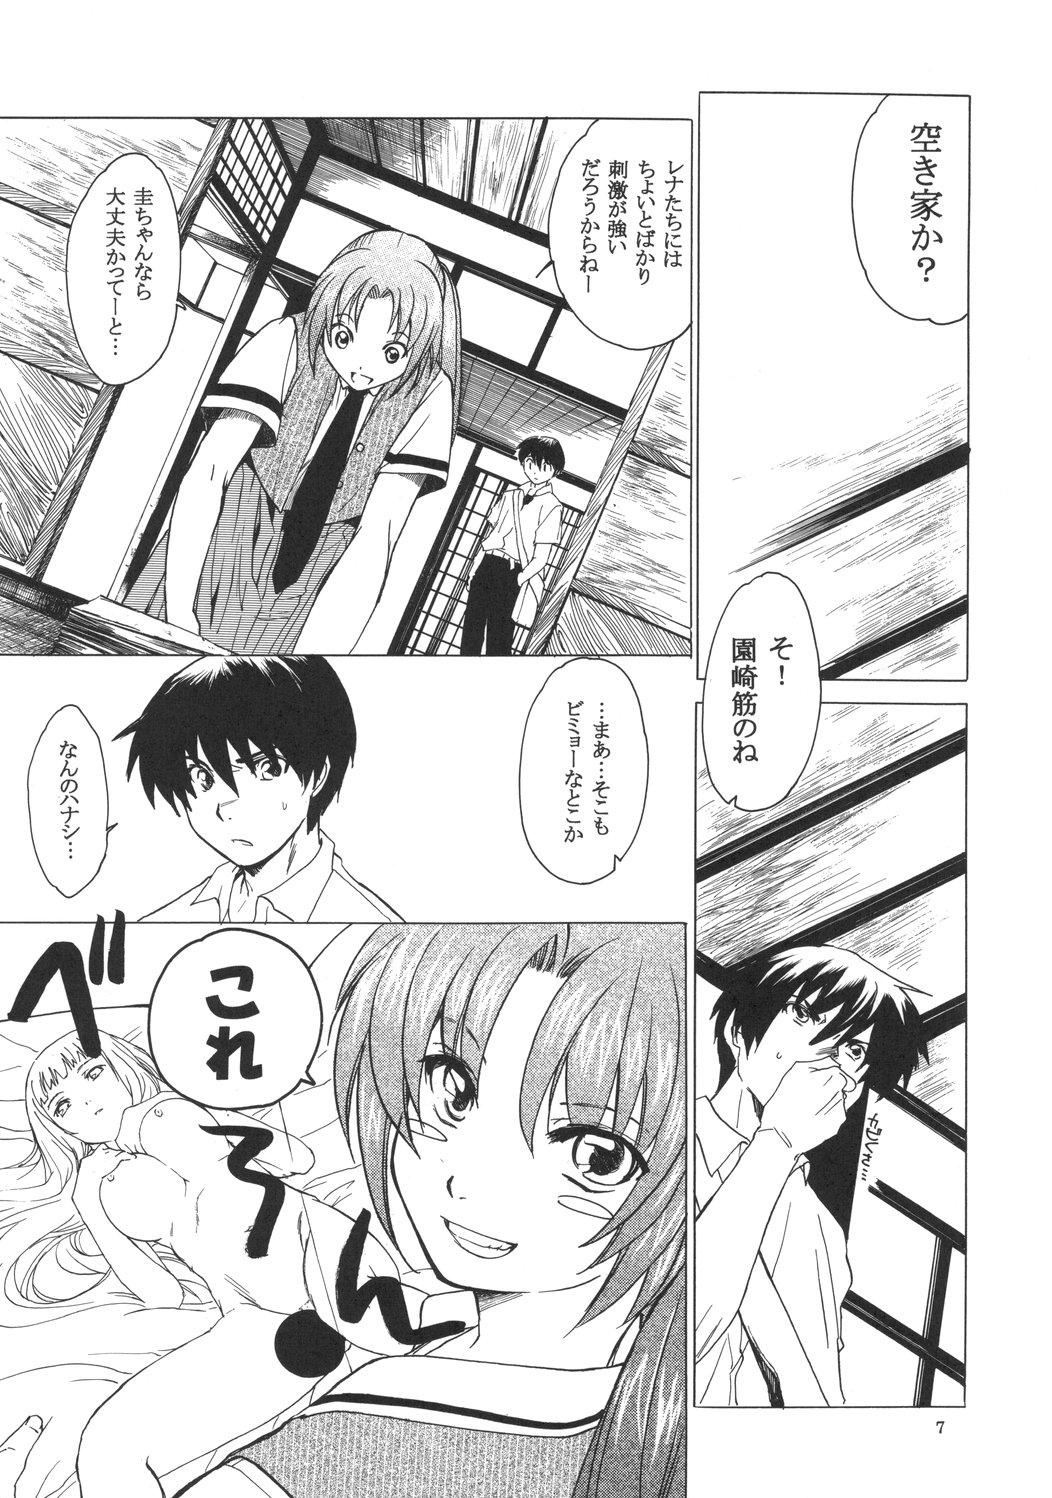 Vecina Manatsu no Oni - Higurashi no naku koro ni Pack - Page 6